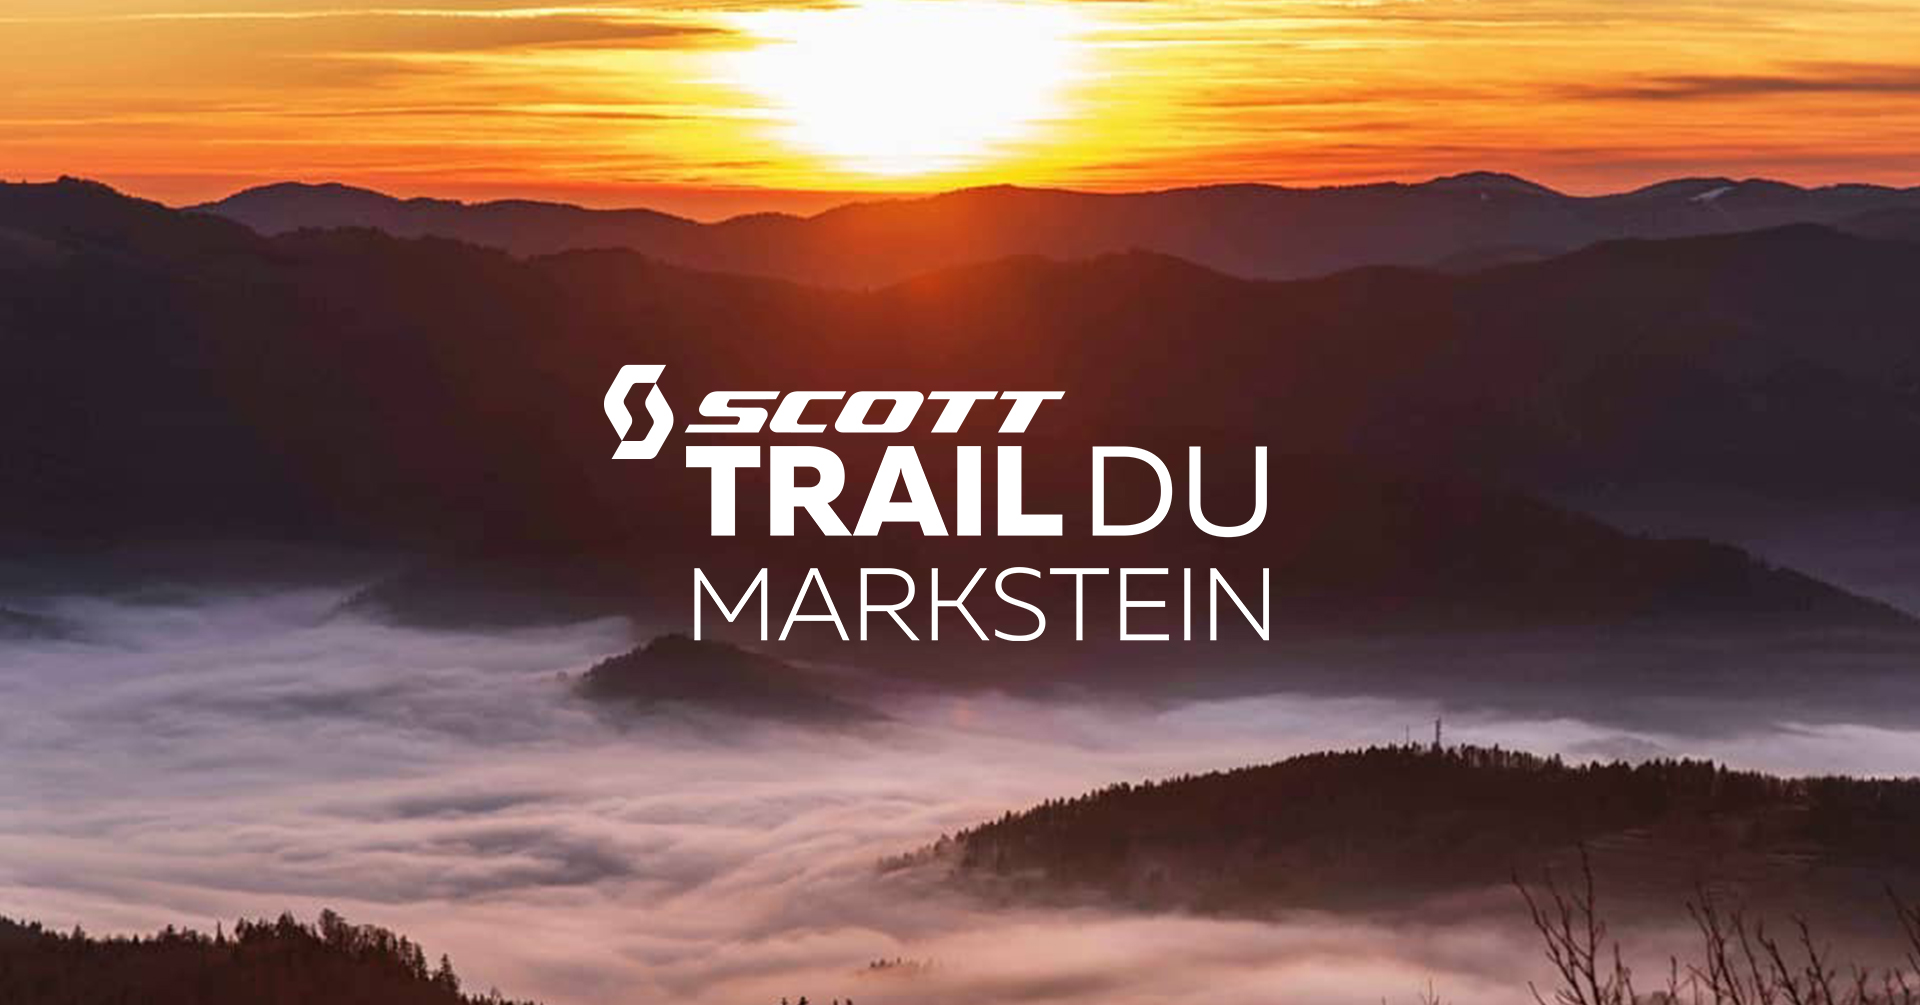 Trail du Markstein